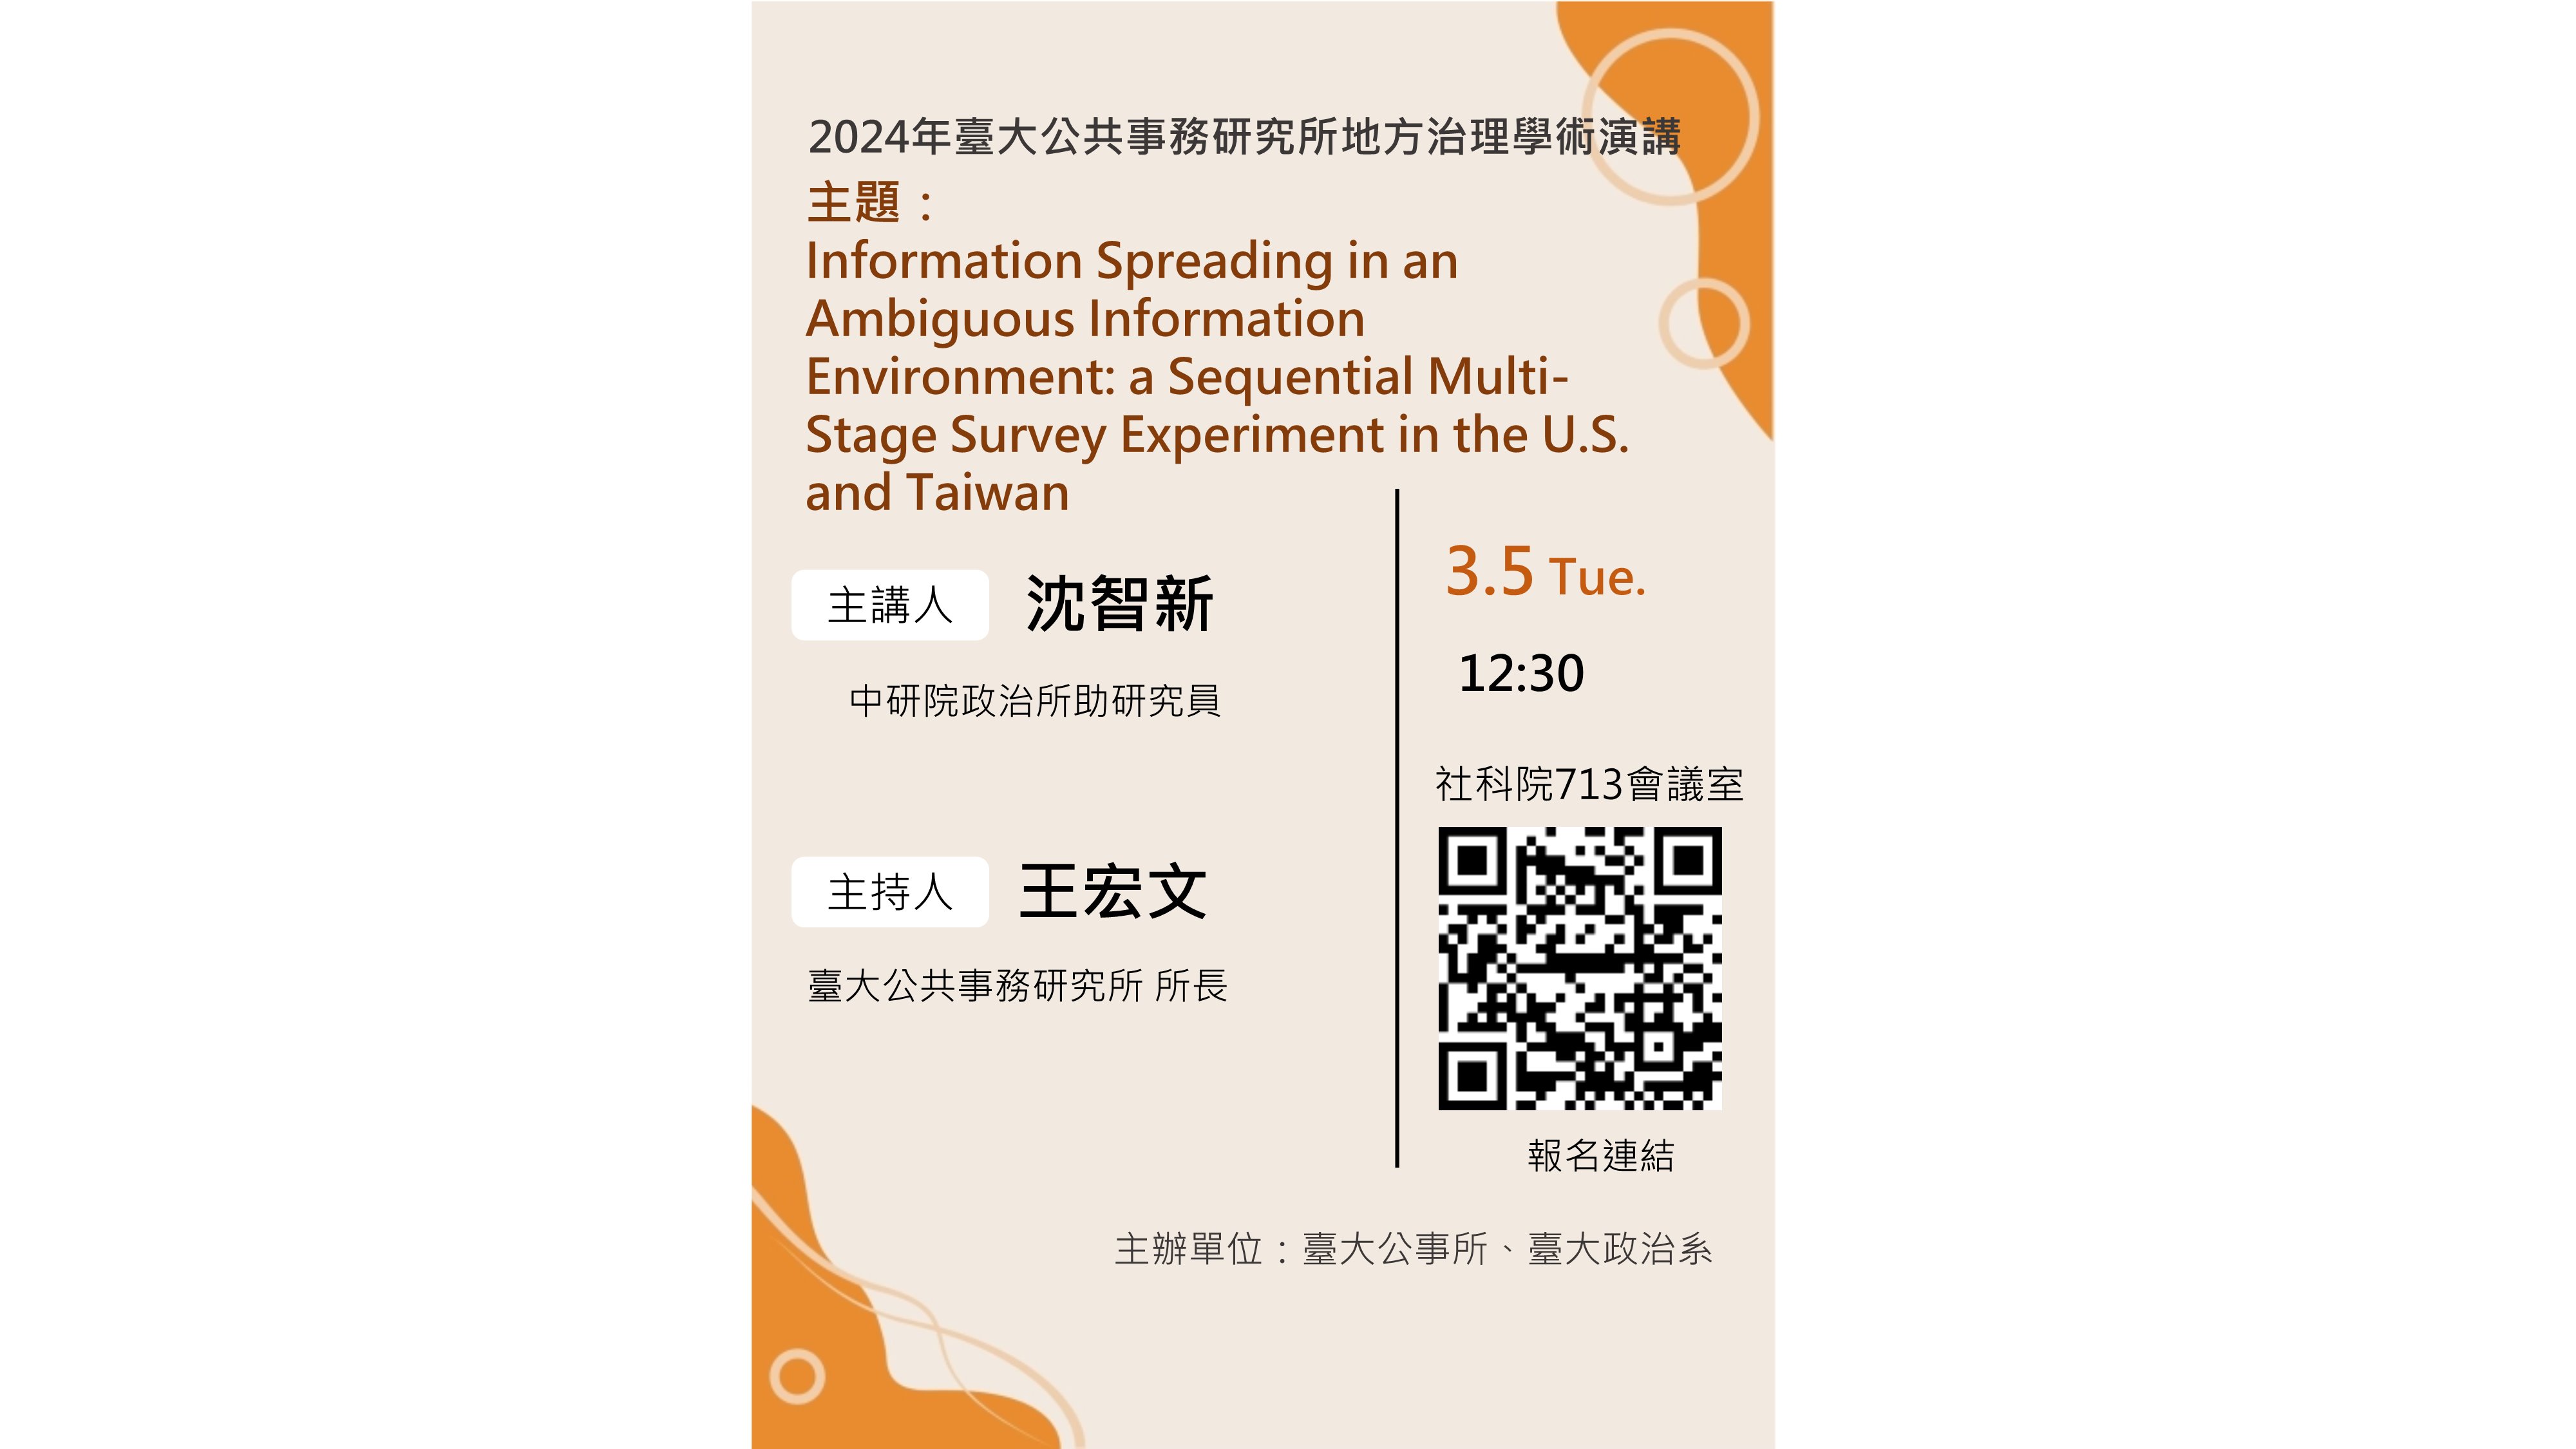 【學術活動】2024年3月5日Information Spreading in an Ambiguous Information Environment: a Sequential Multi-Stage Survey Experiment in the U.S. and Taiwan演講